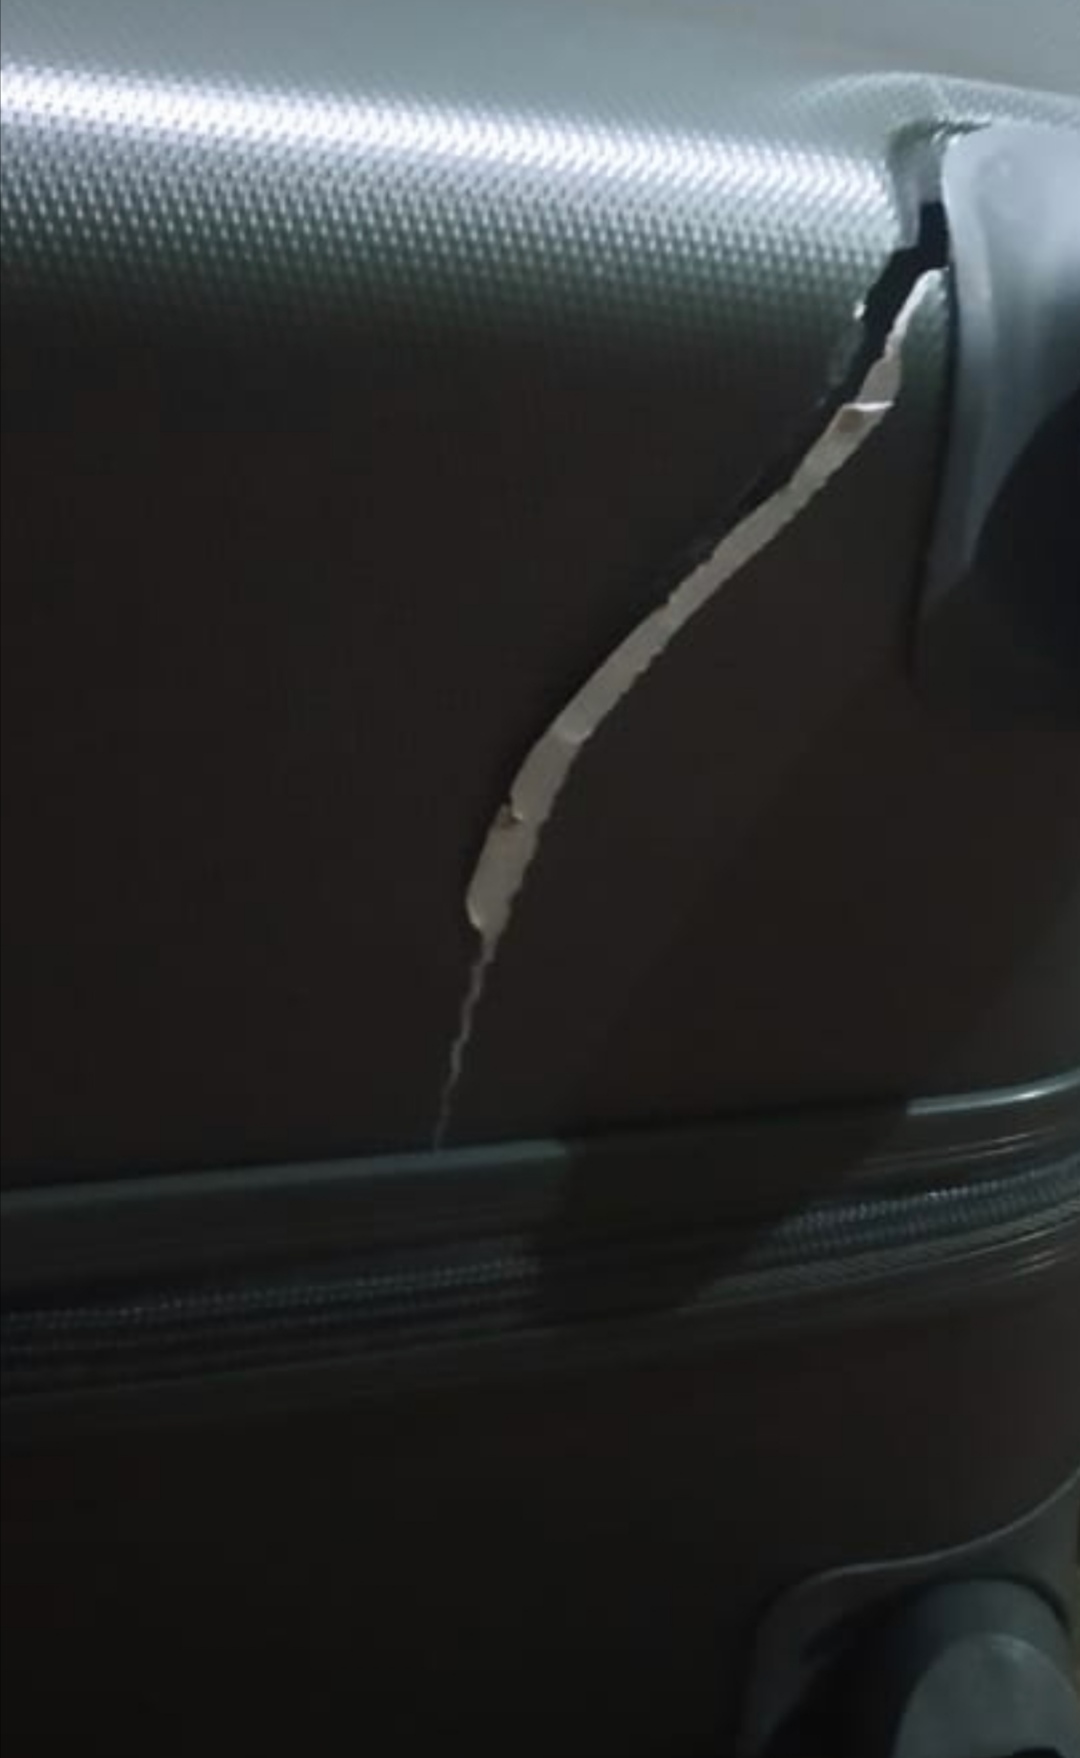 SpiceJet complaint Baggage damage